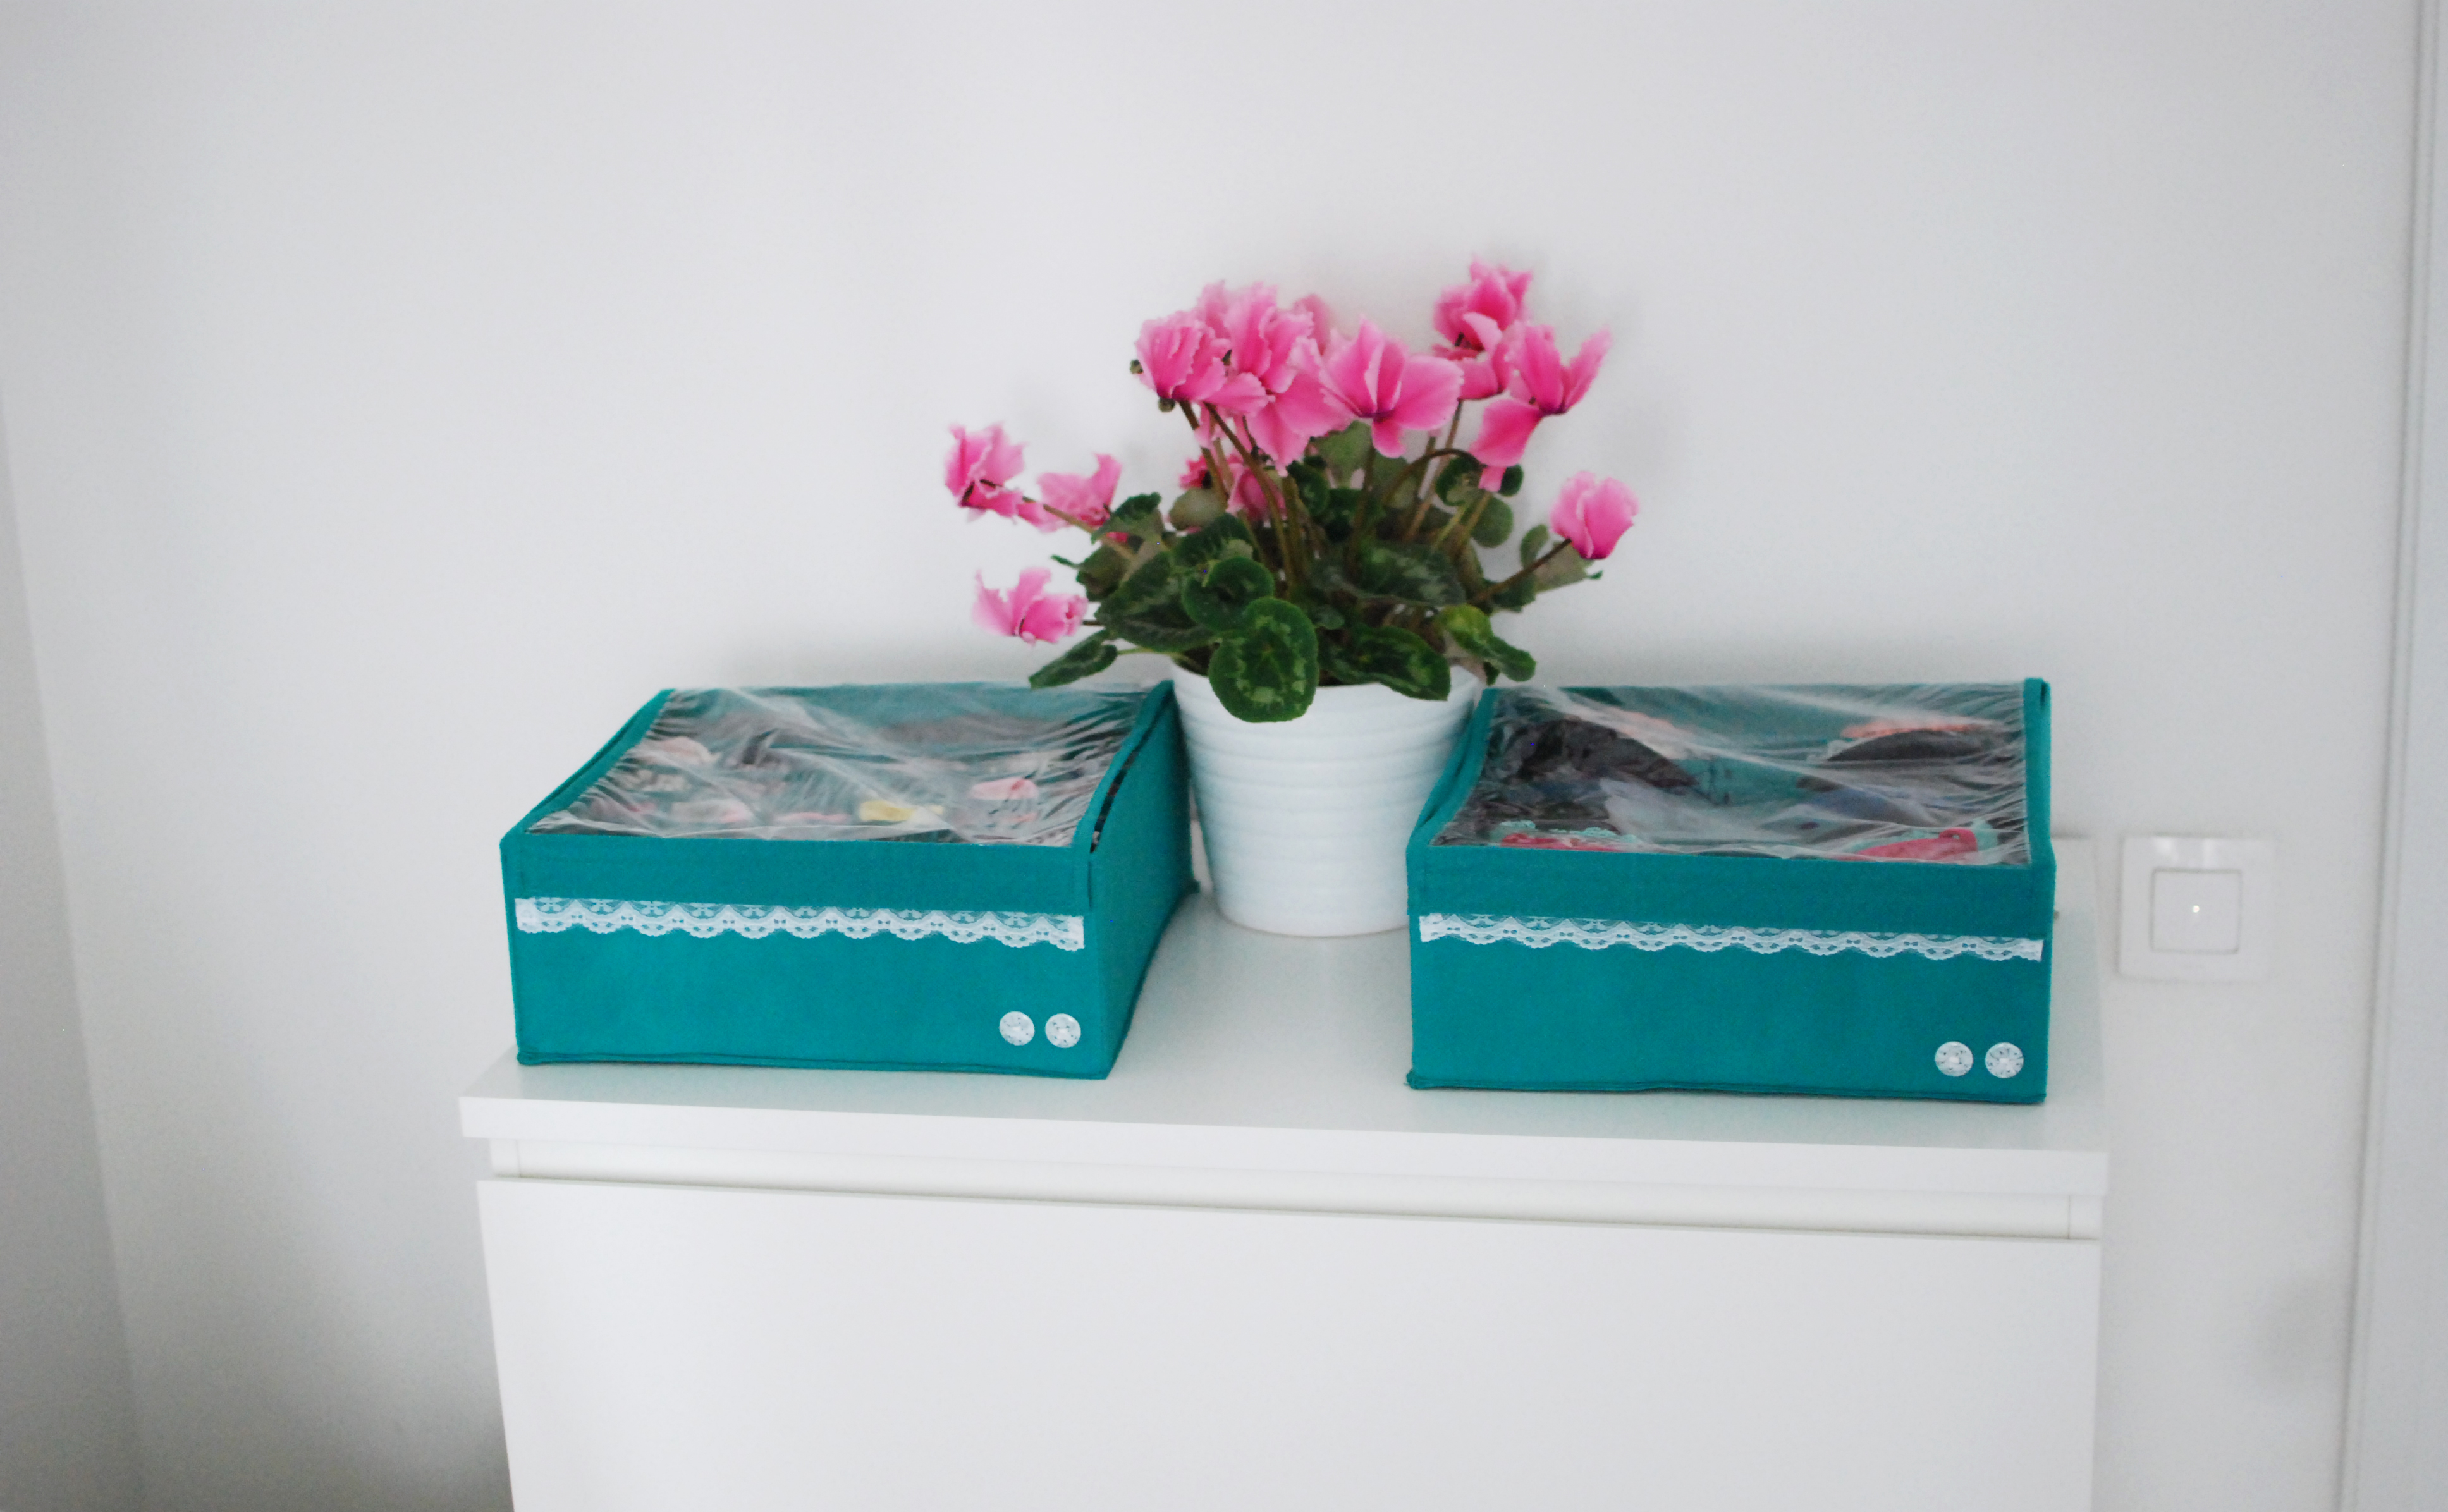 Органайзер для белья (2 шт.) Широкий "Azure" с крышками - коробки для хранения